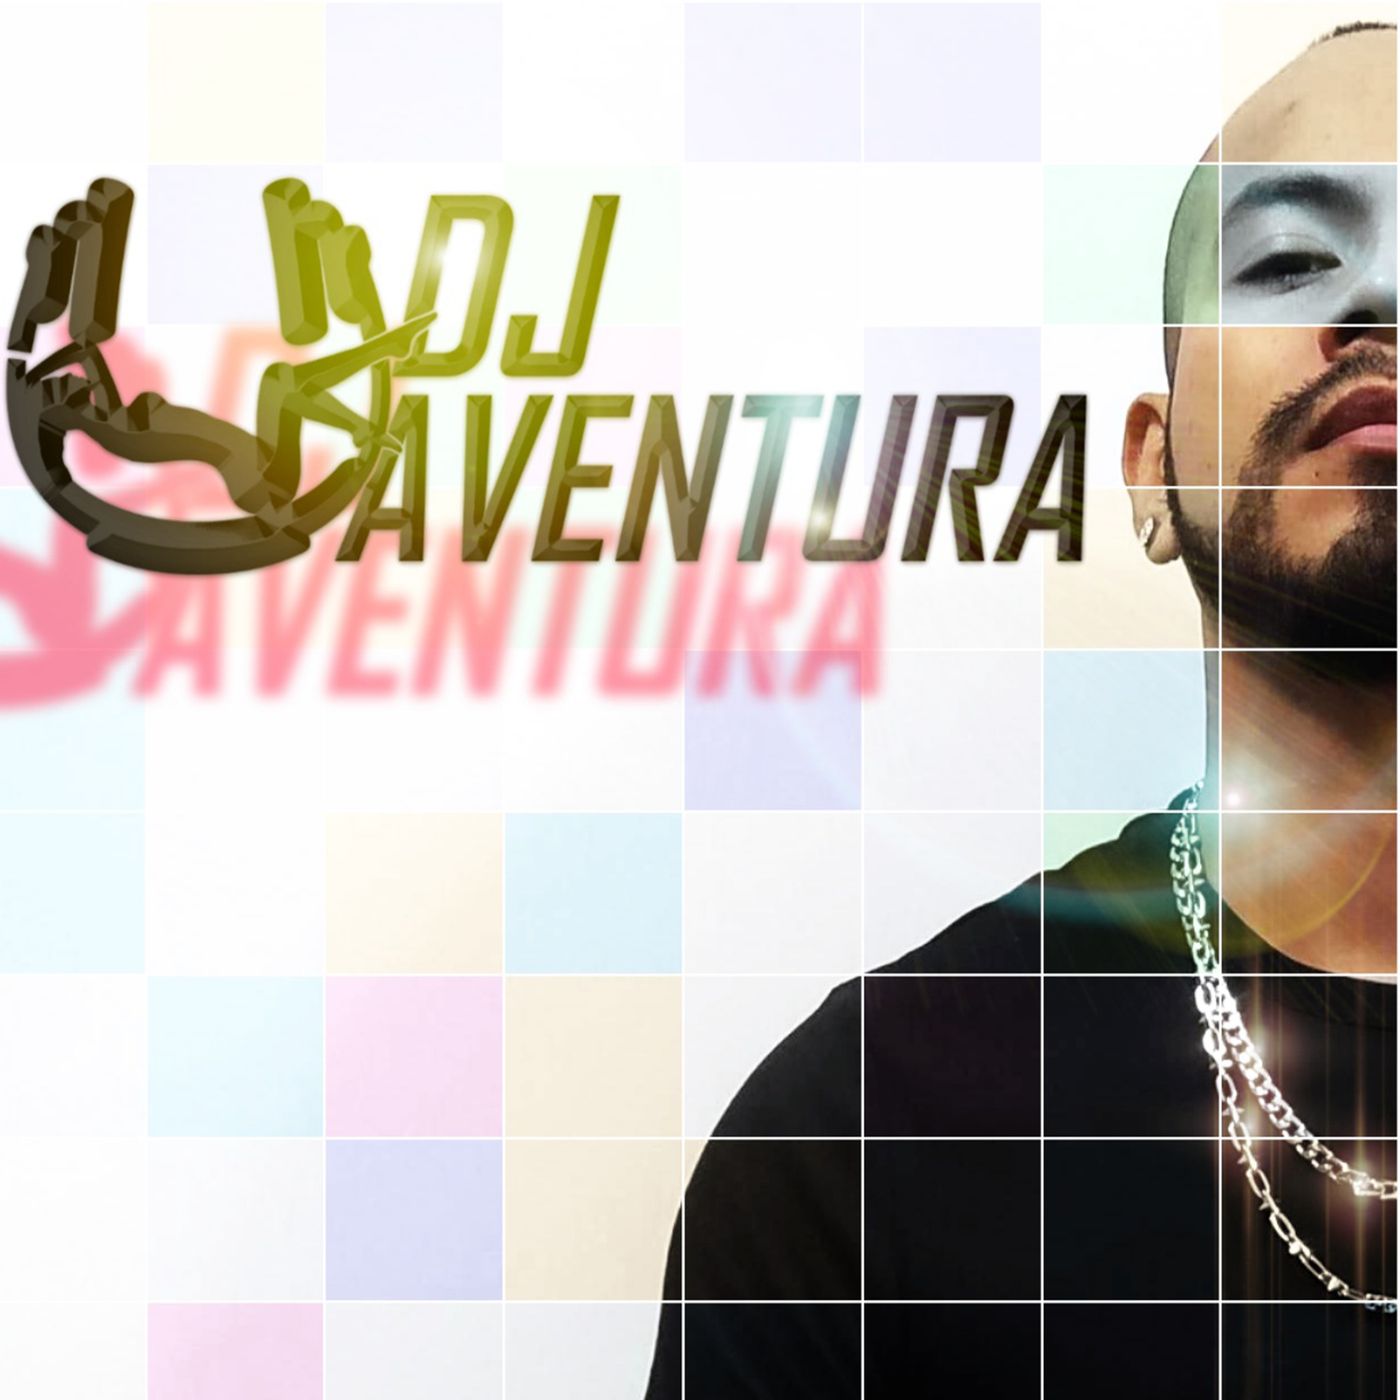 J. Balvin, Skrillex - In Da Getto Fank Remix - Dj Aventura Live